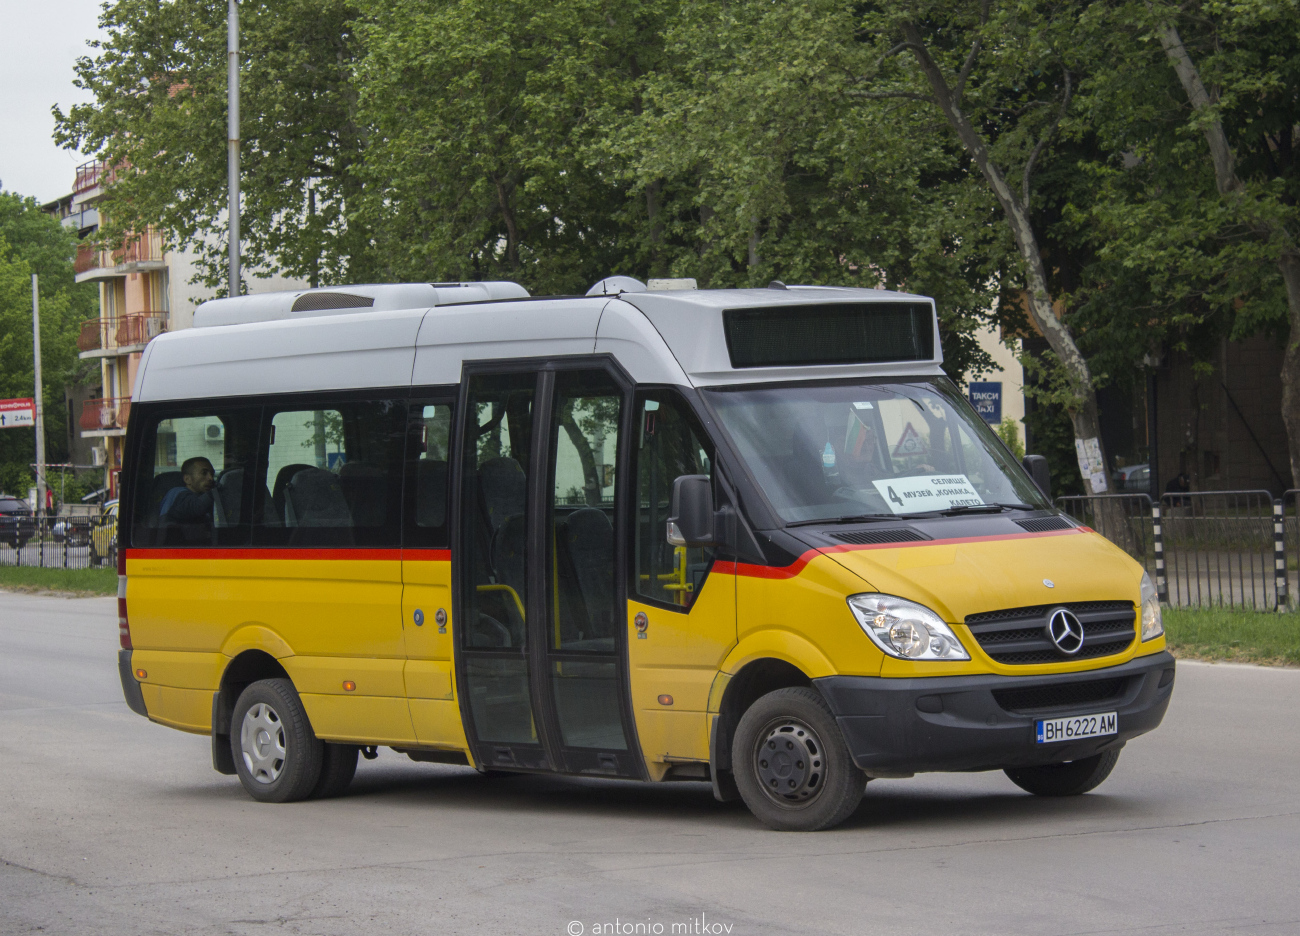 Видин, Mercedes-Benz Sprinter City 35 № 6222